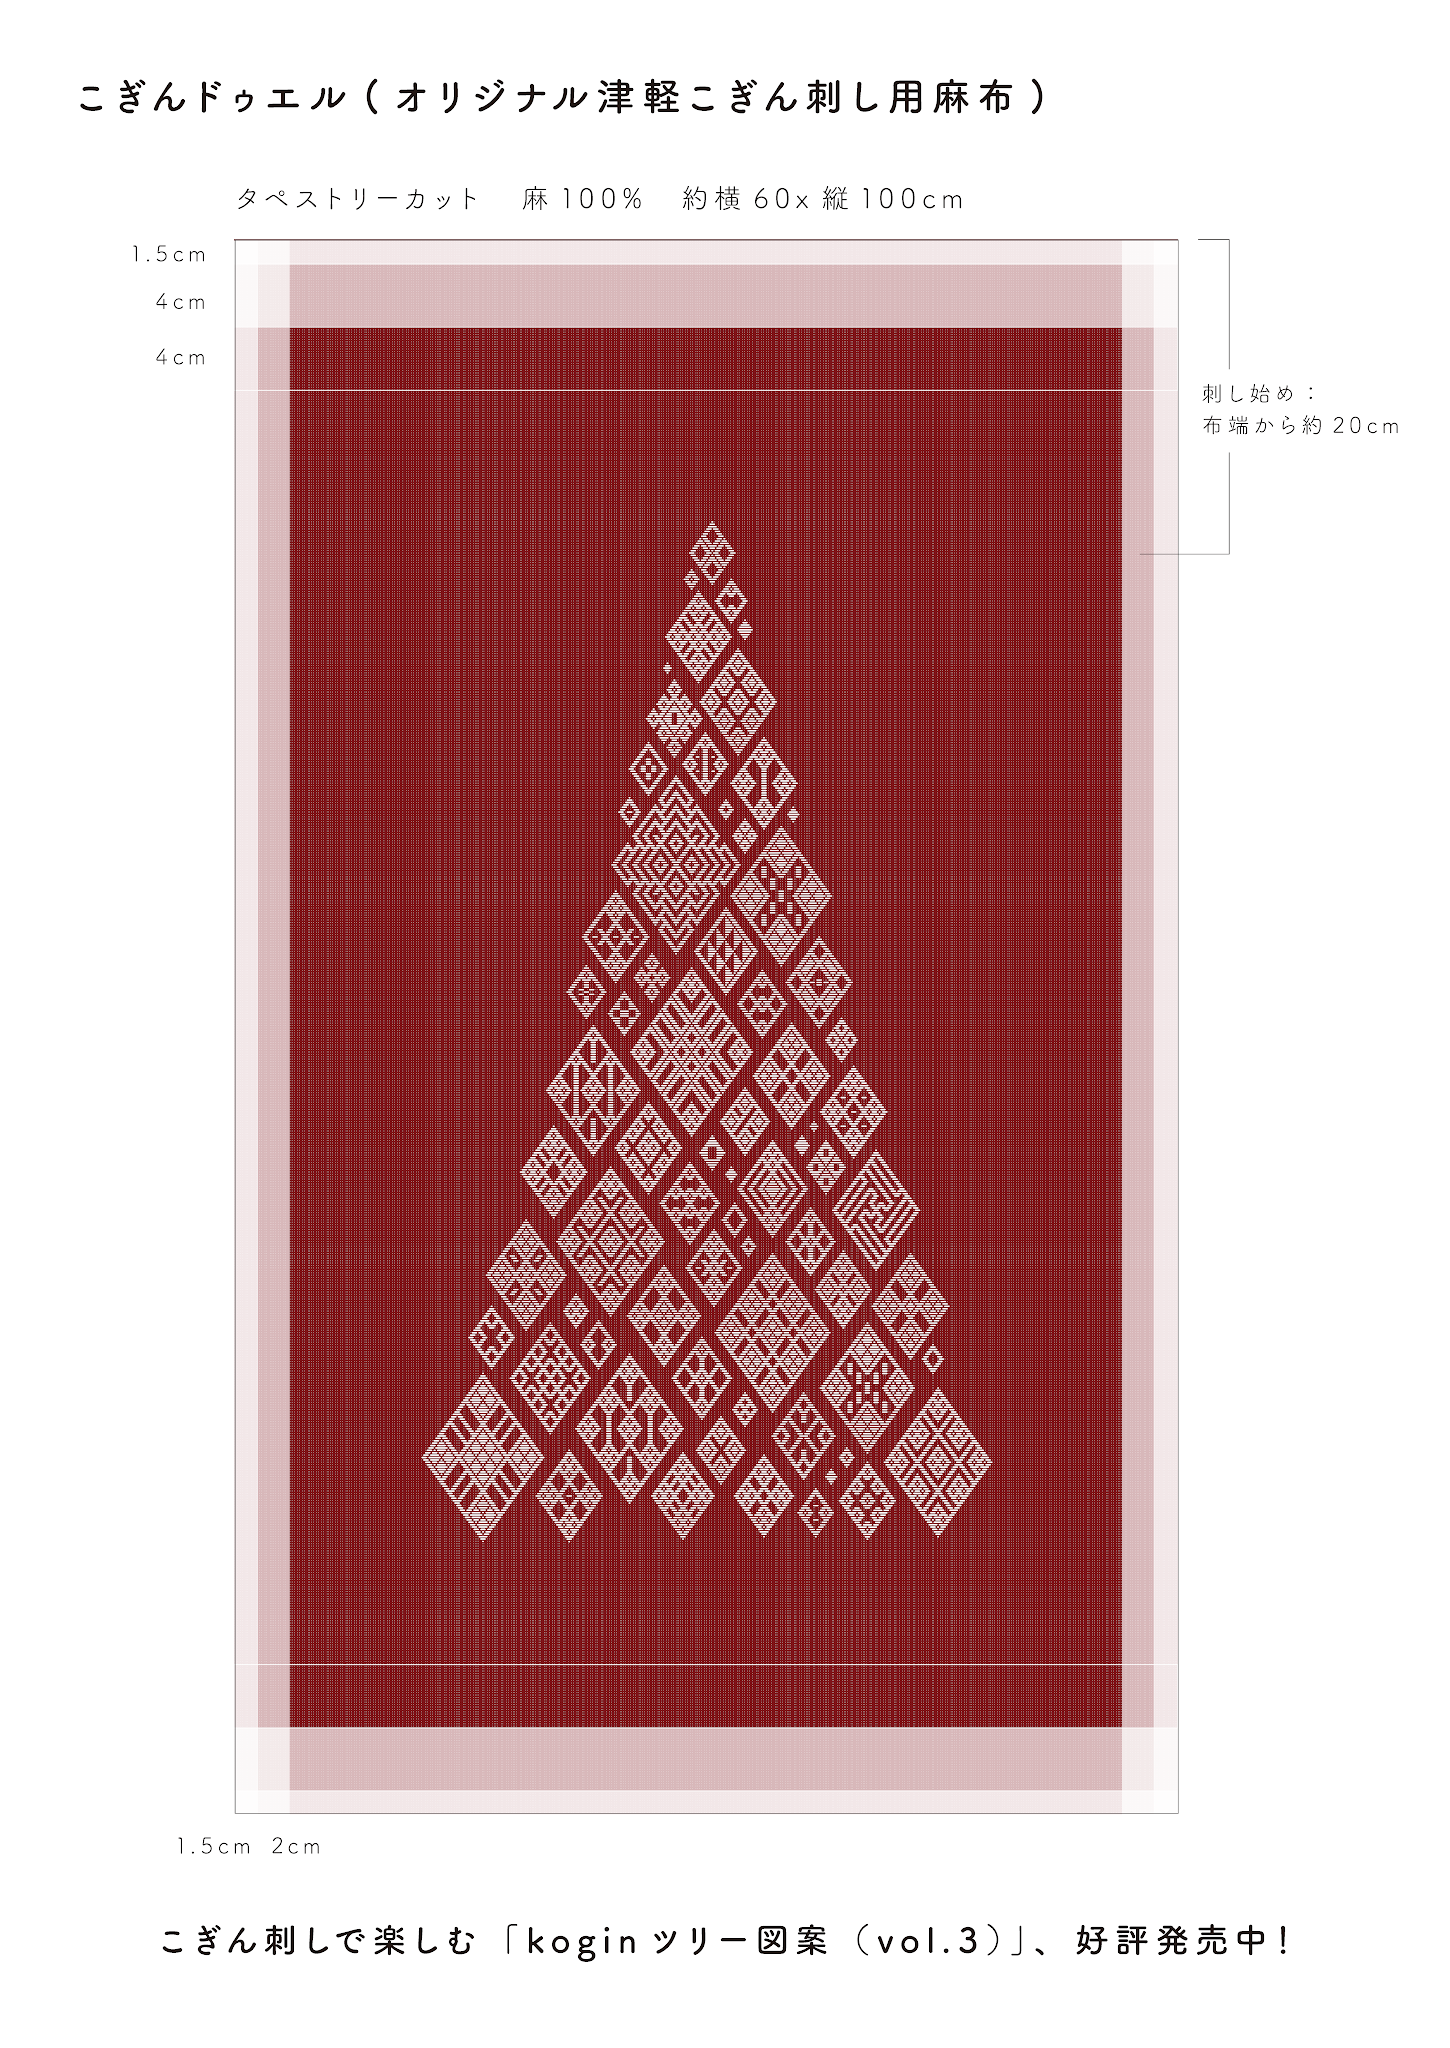 大好評 和の伝統模様でクリスマス こぎん刺しで作る Koginツリー図案 21年9月更新